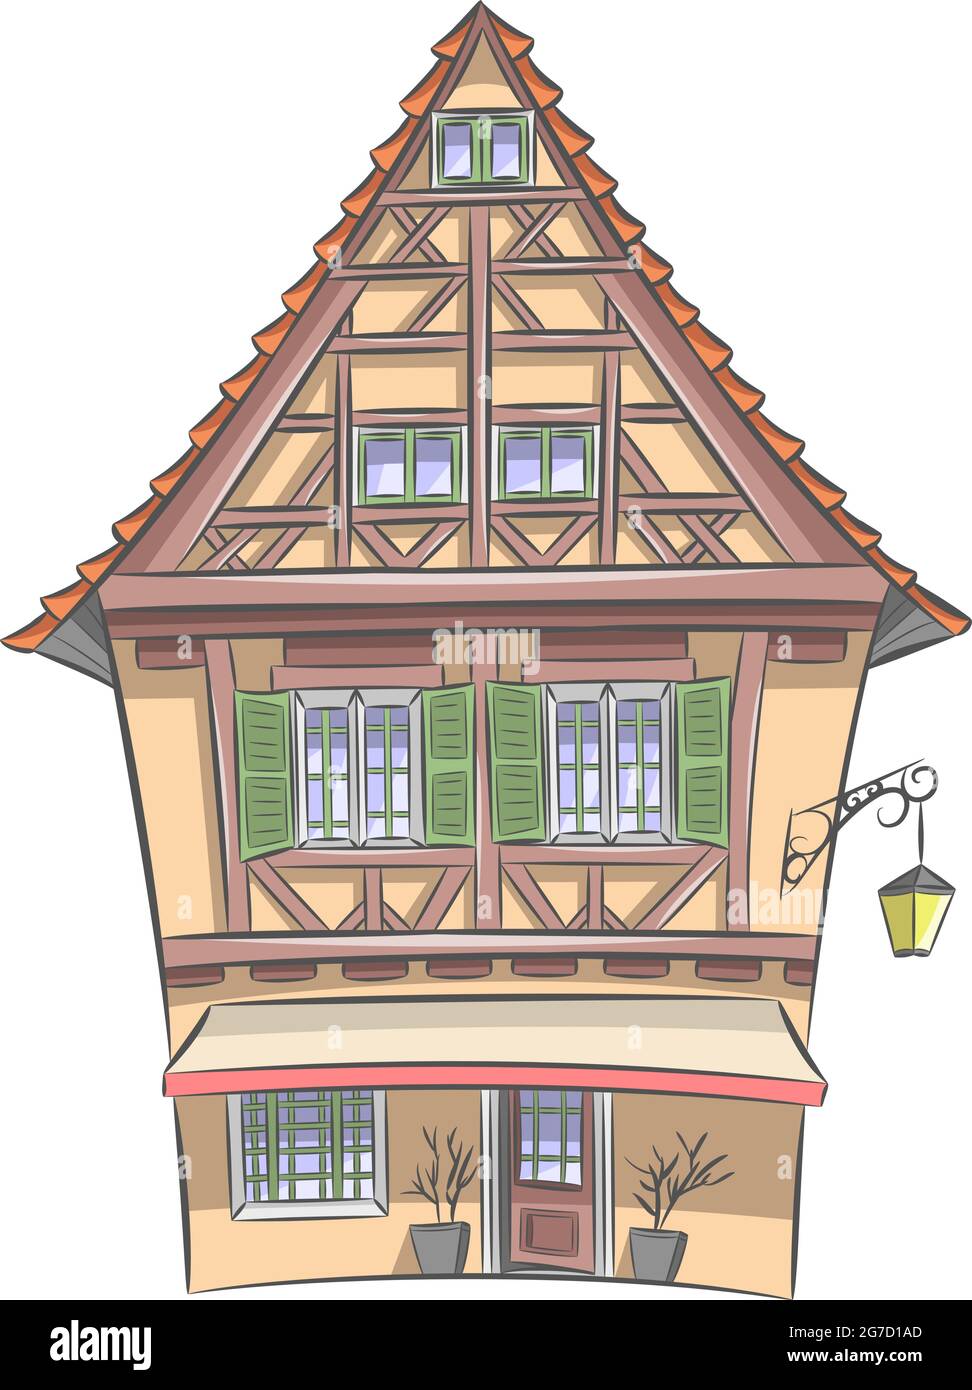 Vektor-Illustration eines alten mittelalterlichen gelben Fachwerkhauses mit einem Ziegeldach und einer Laterne. Colmar. Elsass Frankreich. Stock Vektor